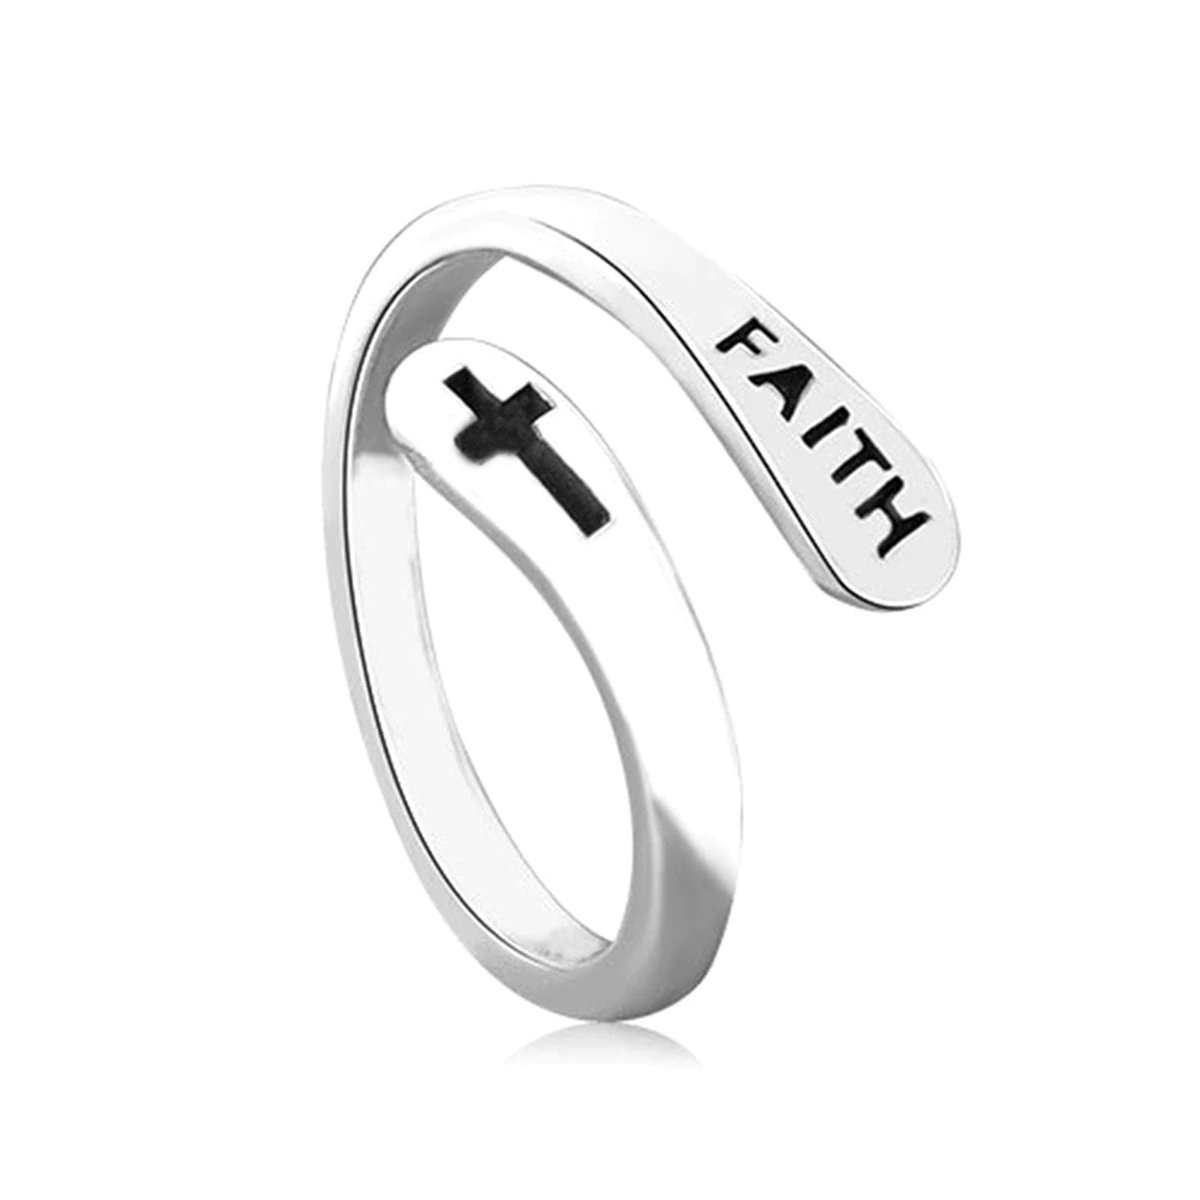 Christelijke ring zilverkleurig met het woord Faith - christelijk sieraad - cadeau - Jezus - God - kado - geloof